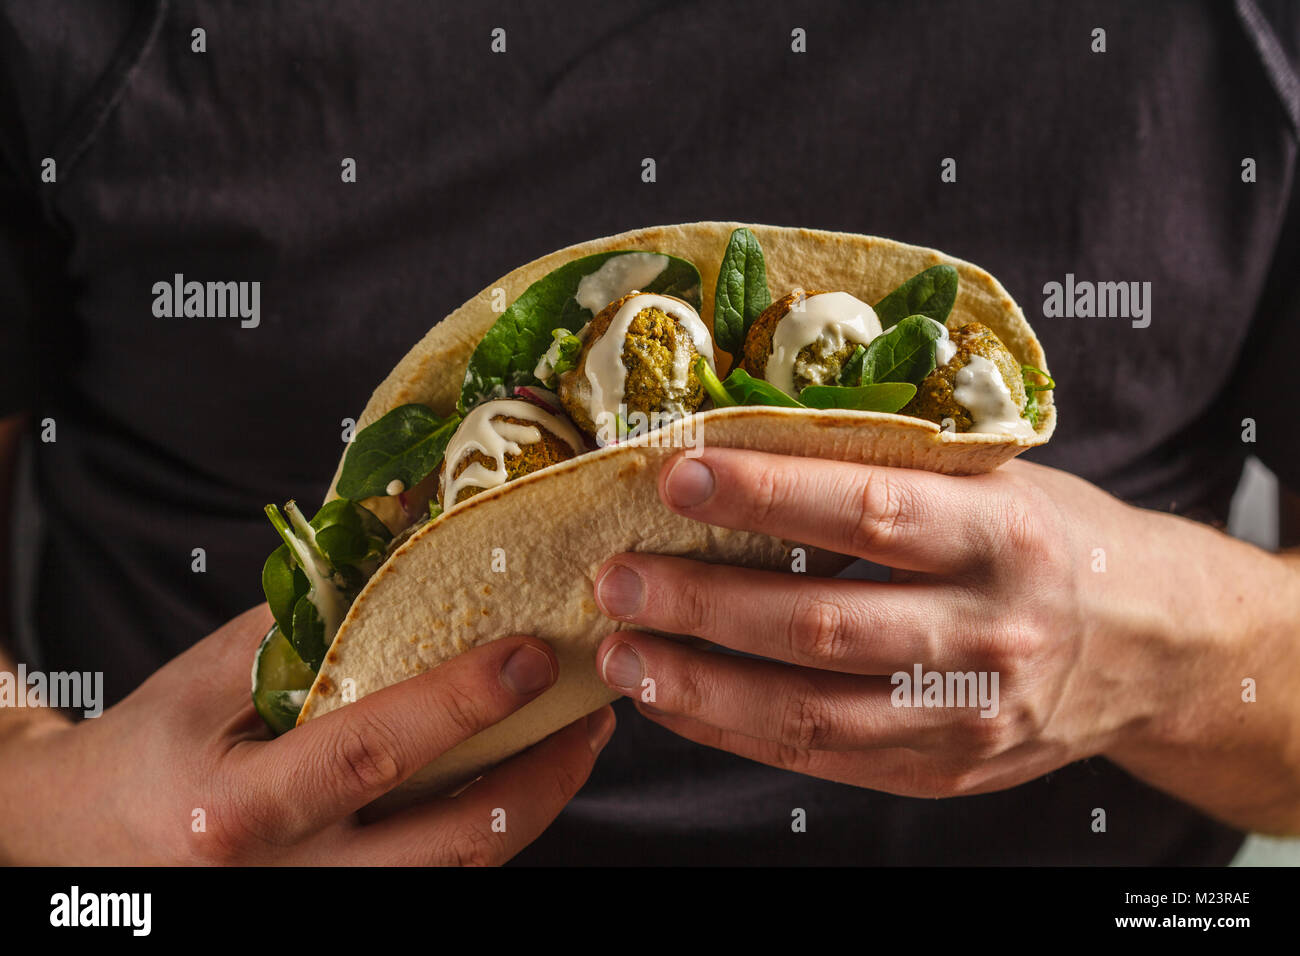 Falafels végétaliens avec légumes et sauce tahini dans la tortilla dans les mains d'un homme. Vegan aliments sains Banque D'Images